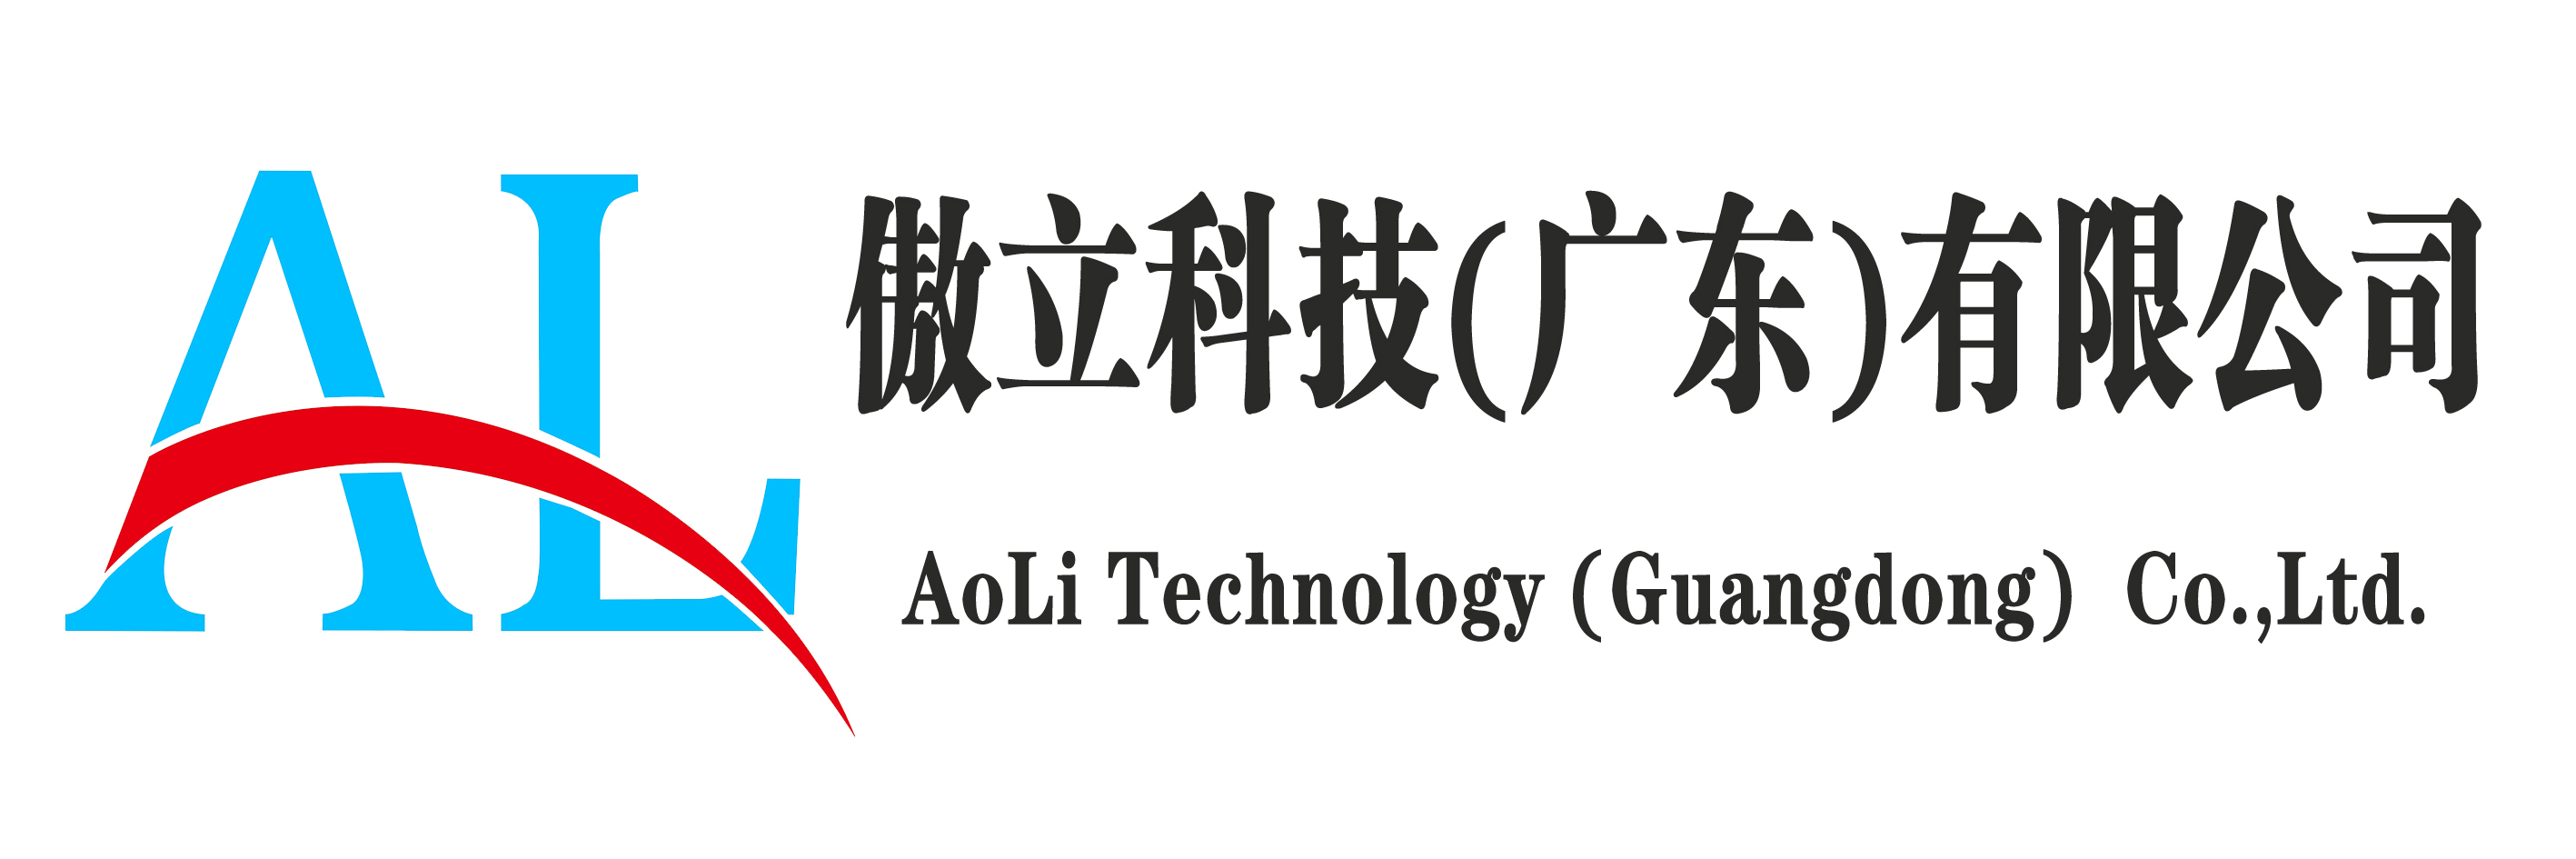 傲立科技(广东)有限公司企业logo